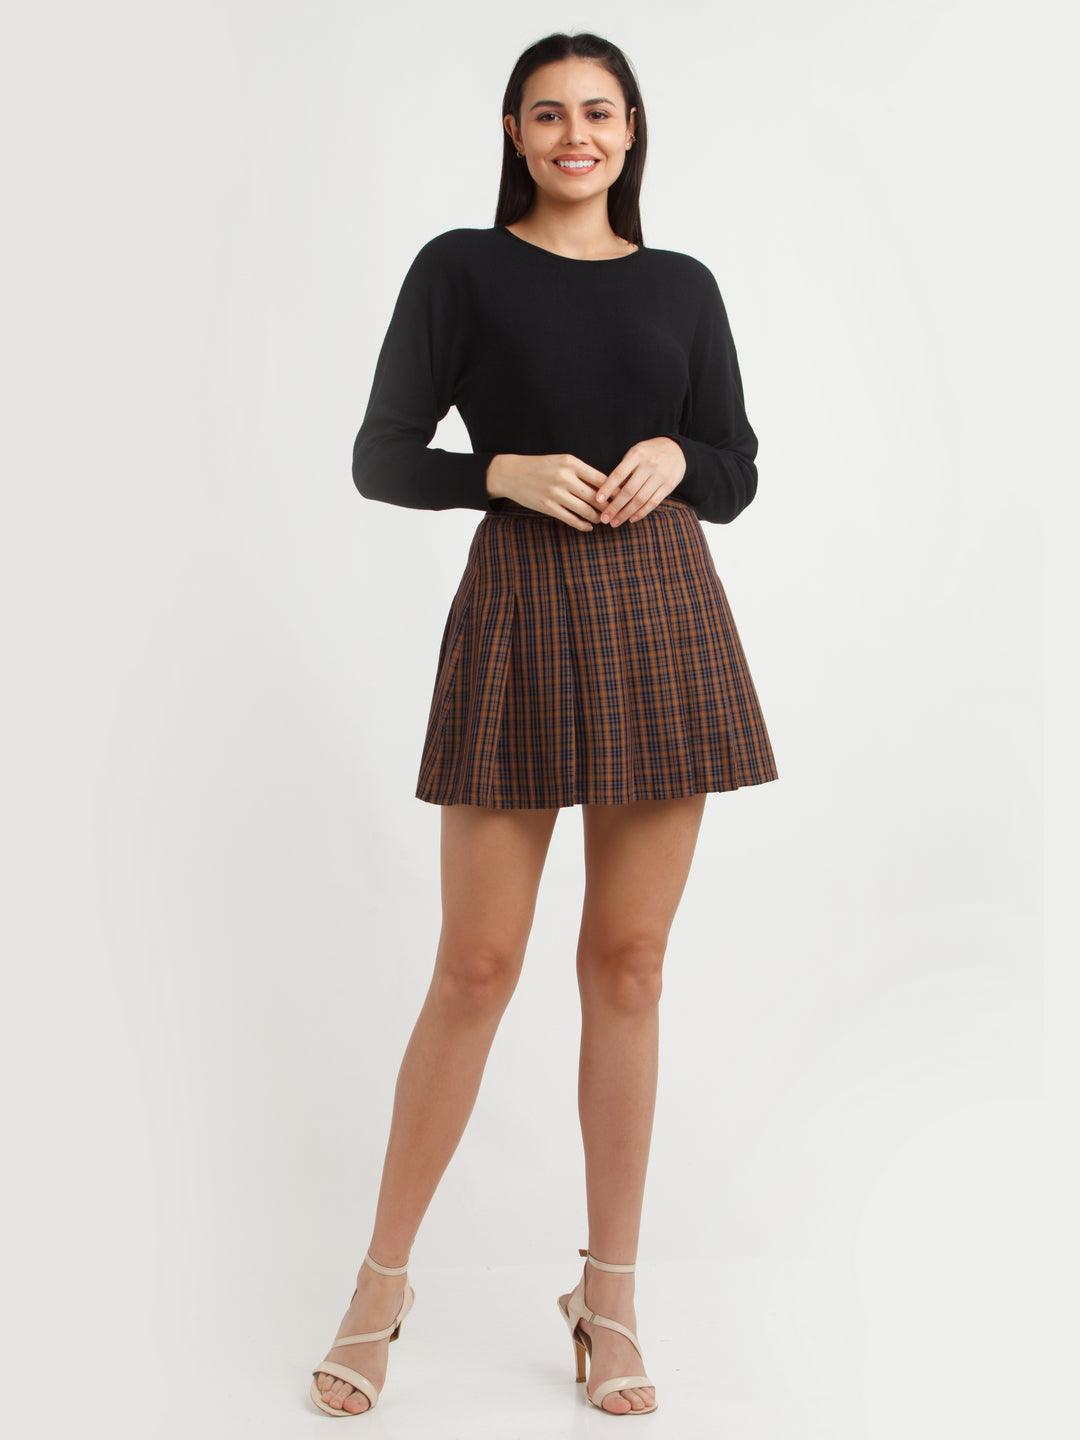 Multi Color Checked Skirt For Women